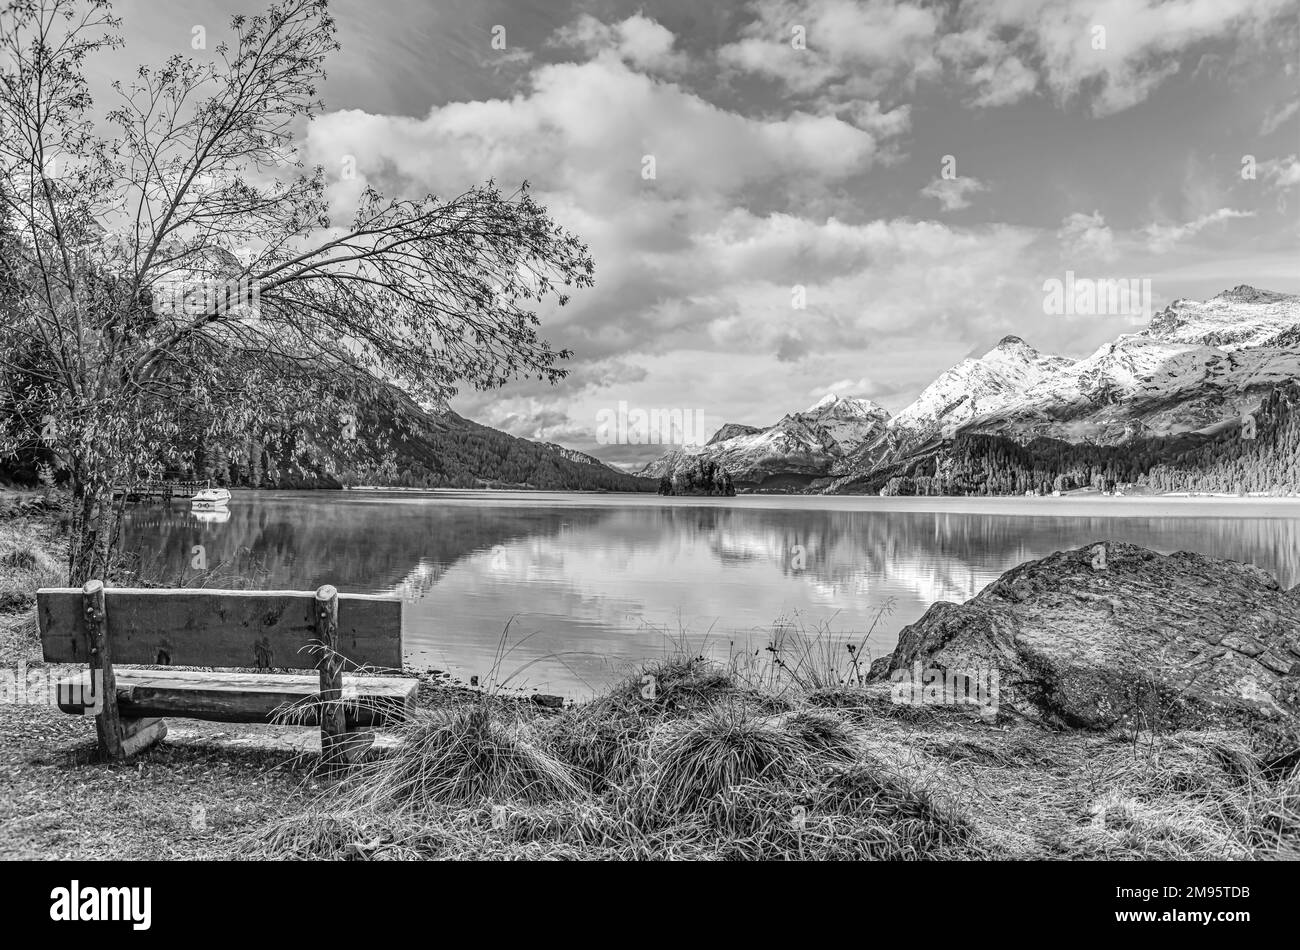 Panchina del parco in un paesaggio autunnale al Lago Sils, Engadina, Svizzera con Piz Margna sullo sfondo in bianco e nero Foto Stock